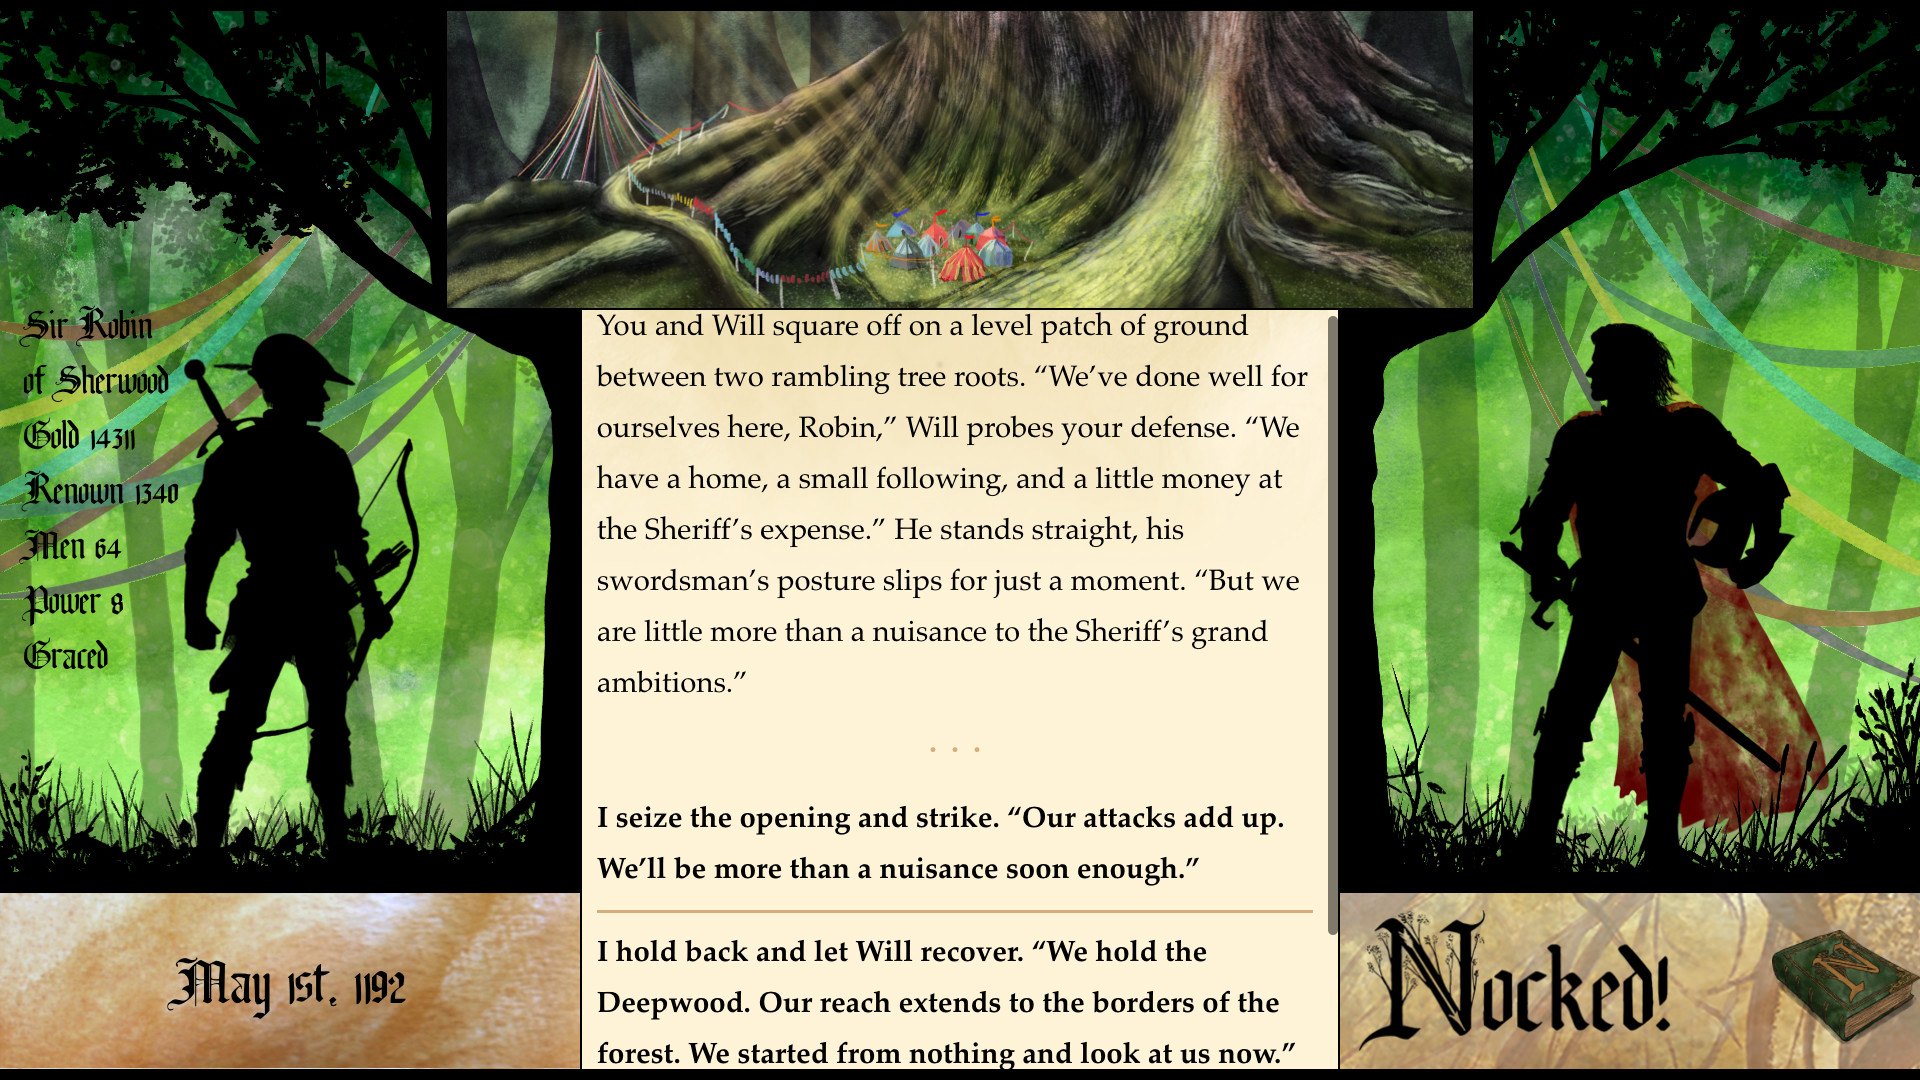 Nocked! True Tales of Robin Hood Steam CD Key [$ 2.88]